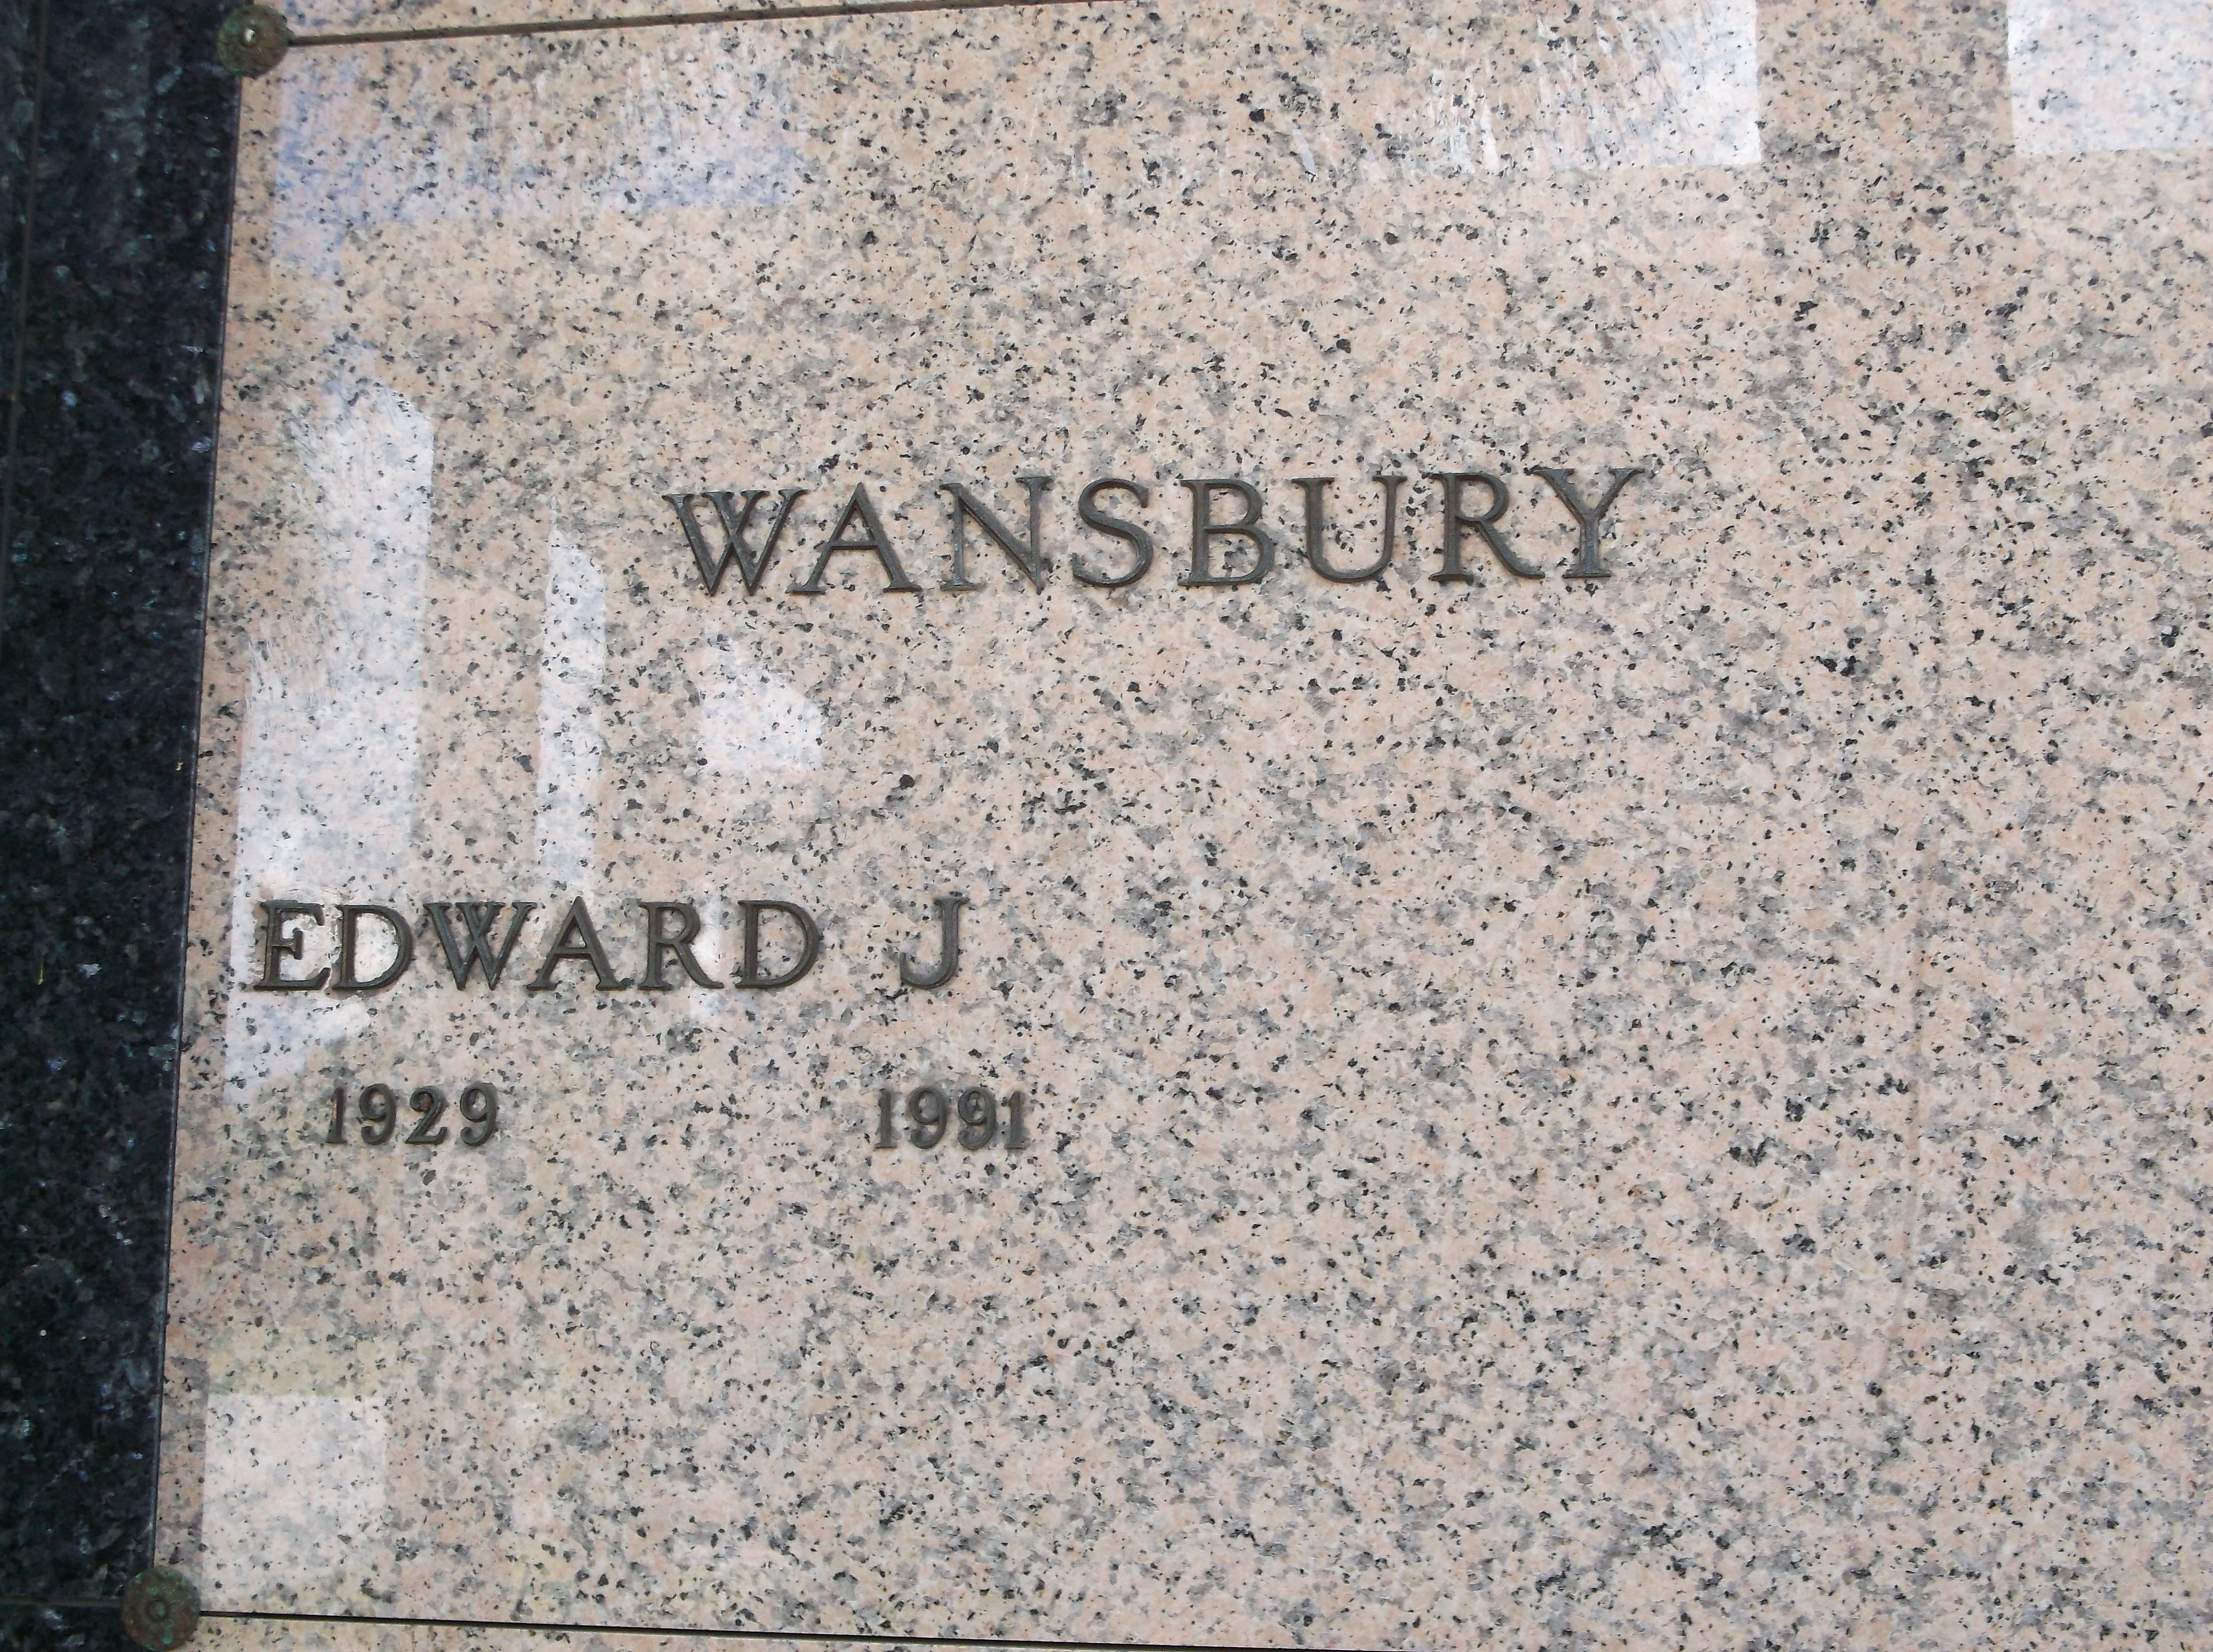 Edward J Wansbury